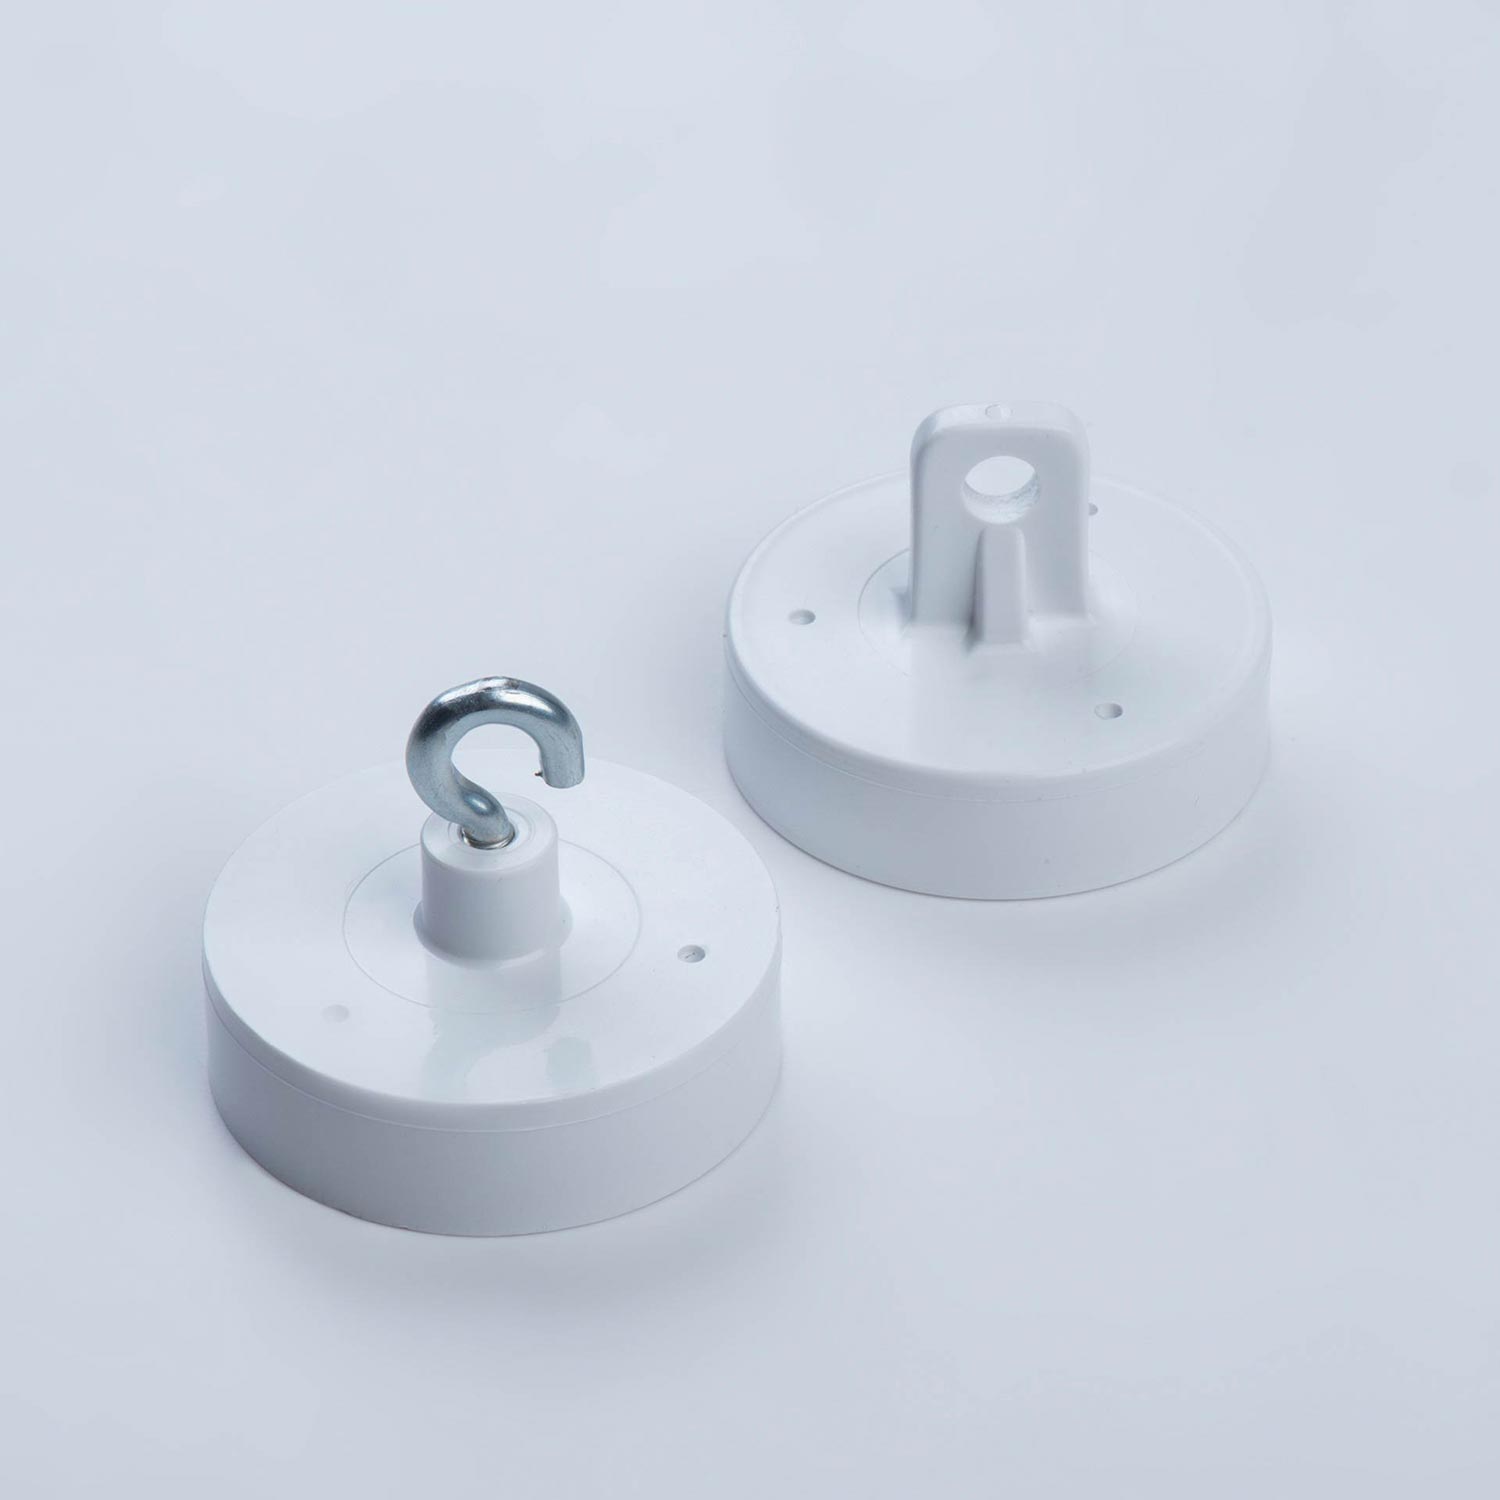 Dekorationsmagnet Ferrit Magnet mit Haken weiß lackiert Topfmagnet Magnete rund 